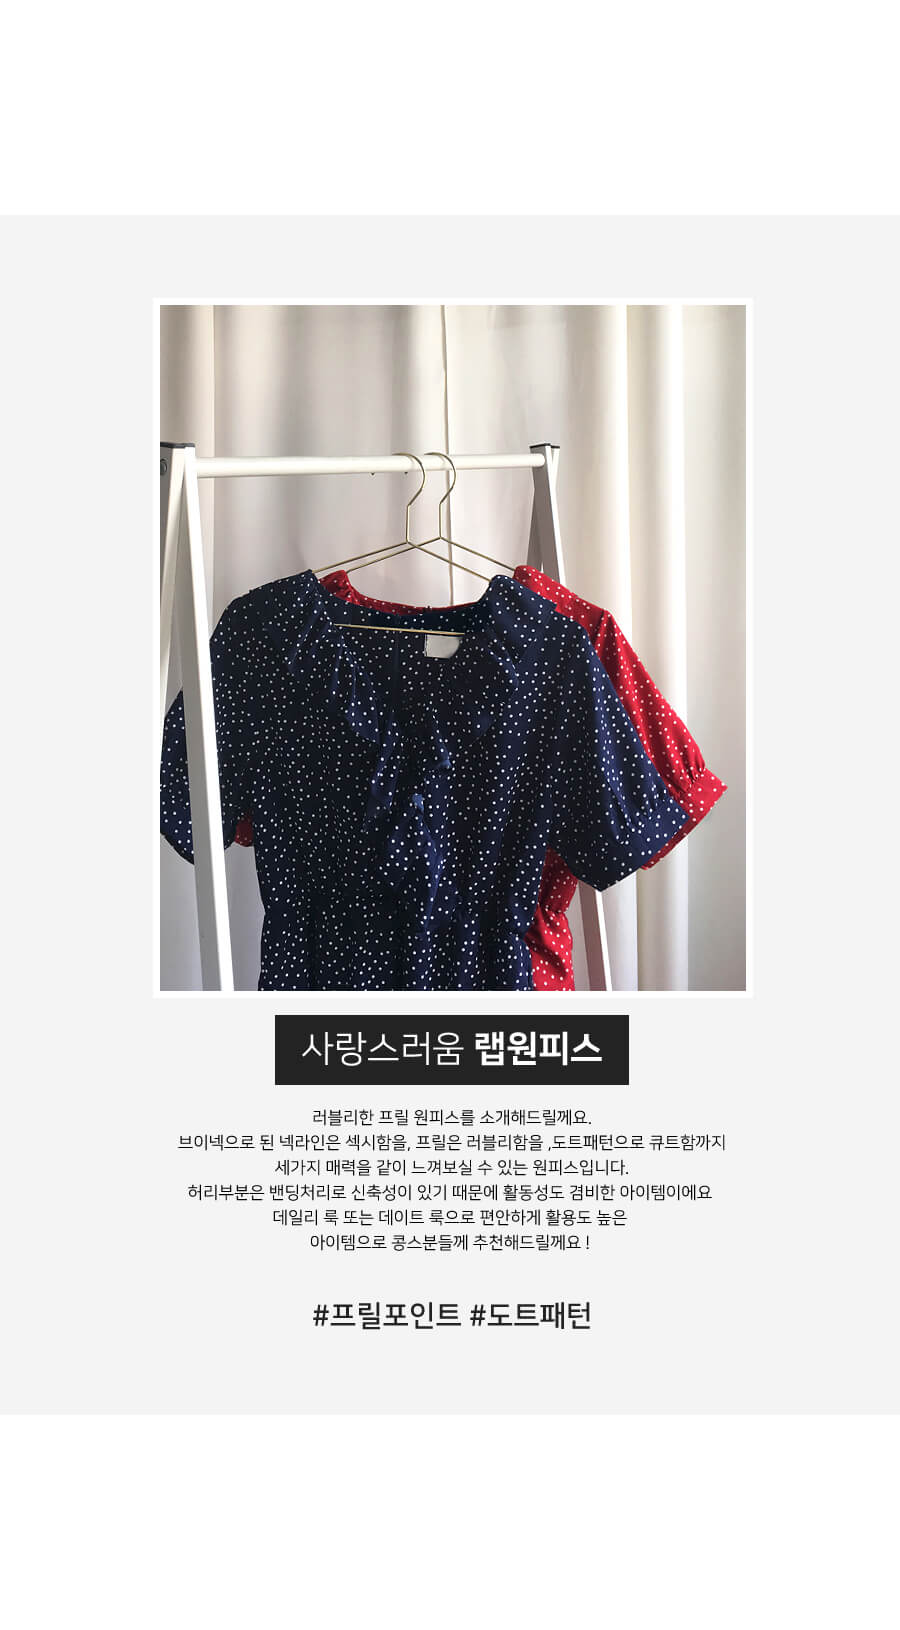 韓國平價服飾 點點荷葉邊連身裙